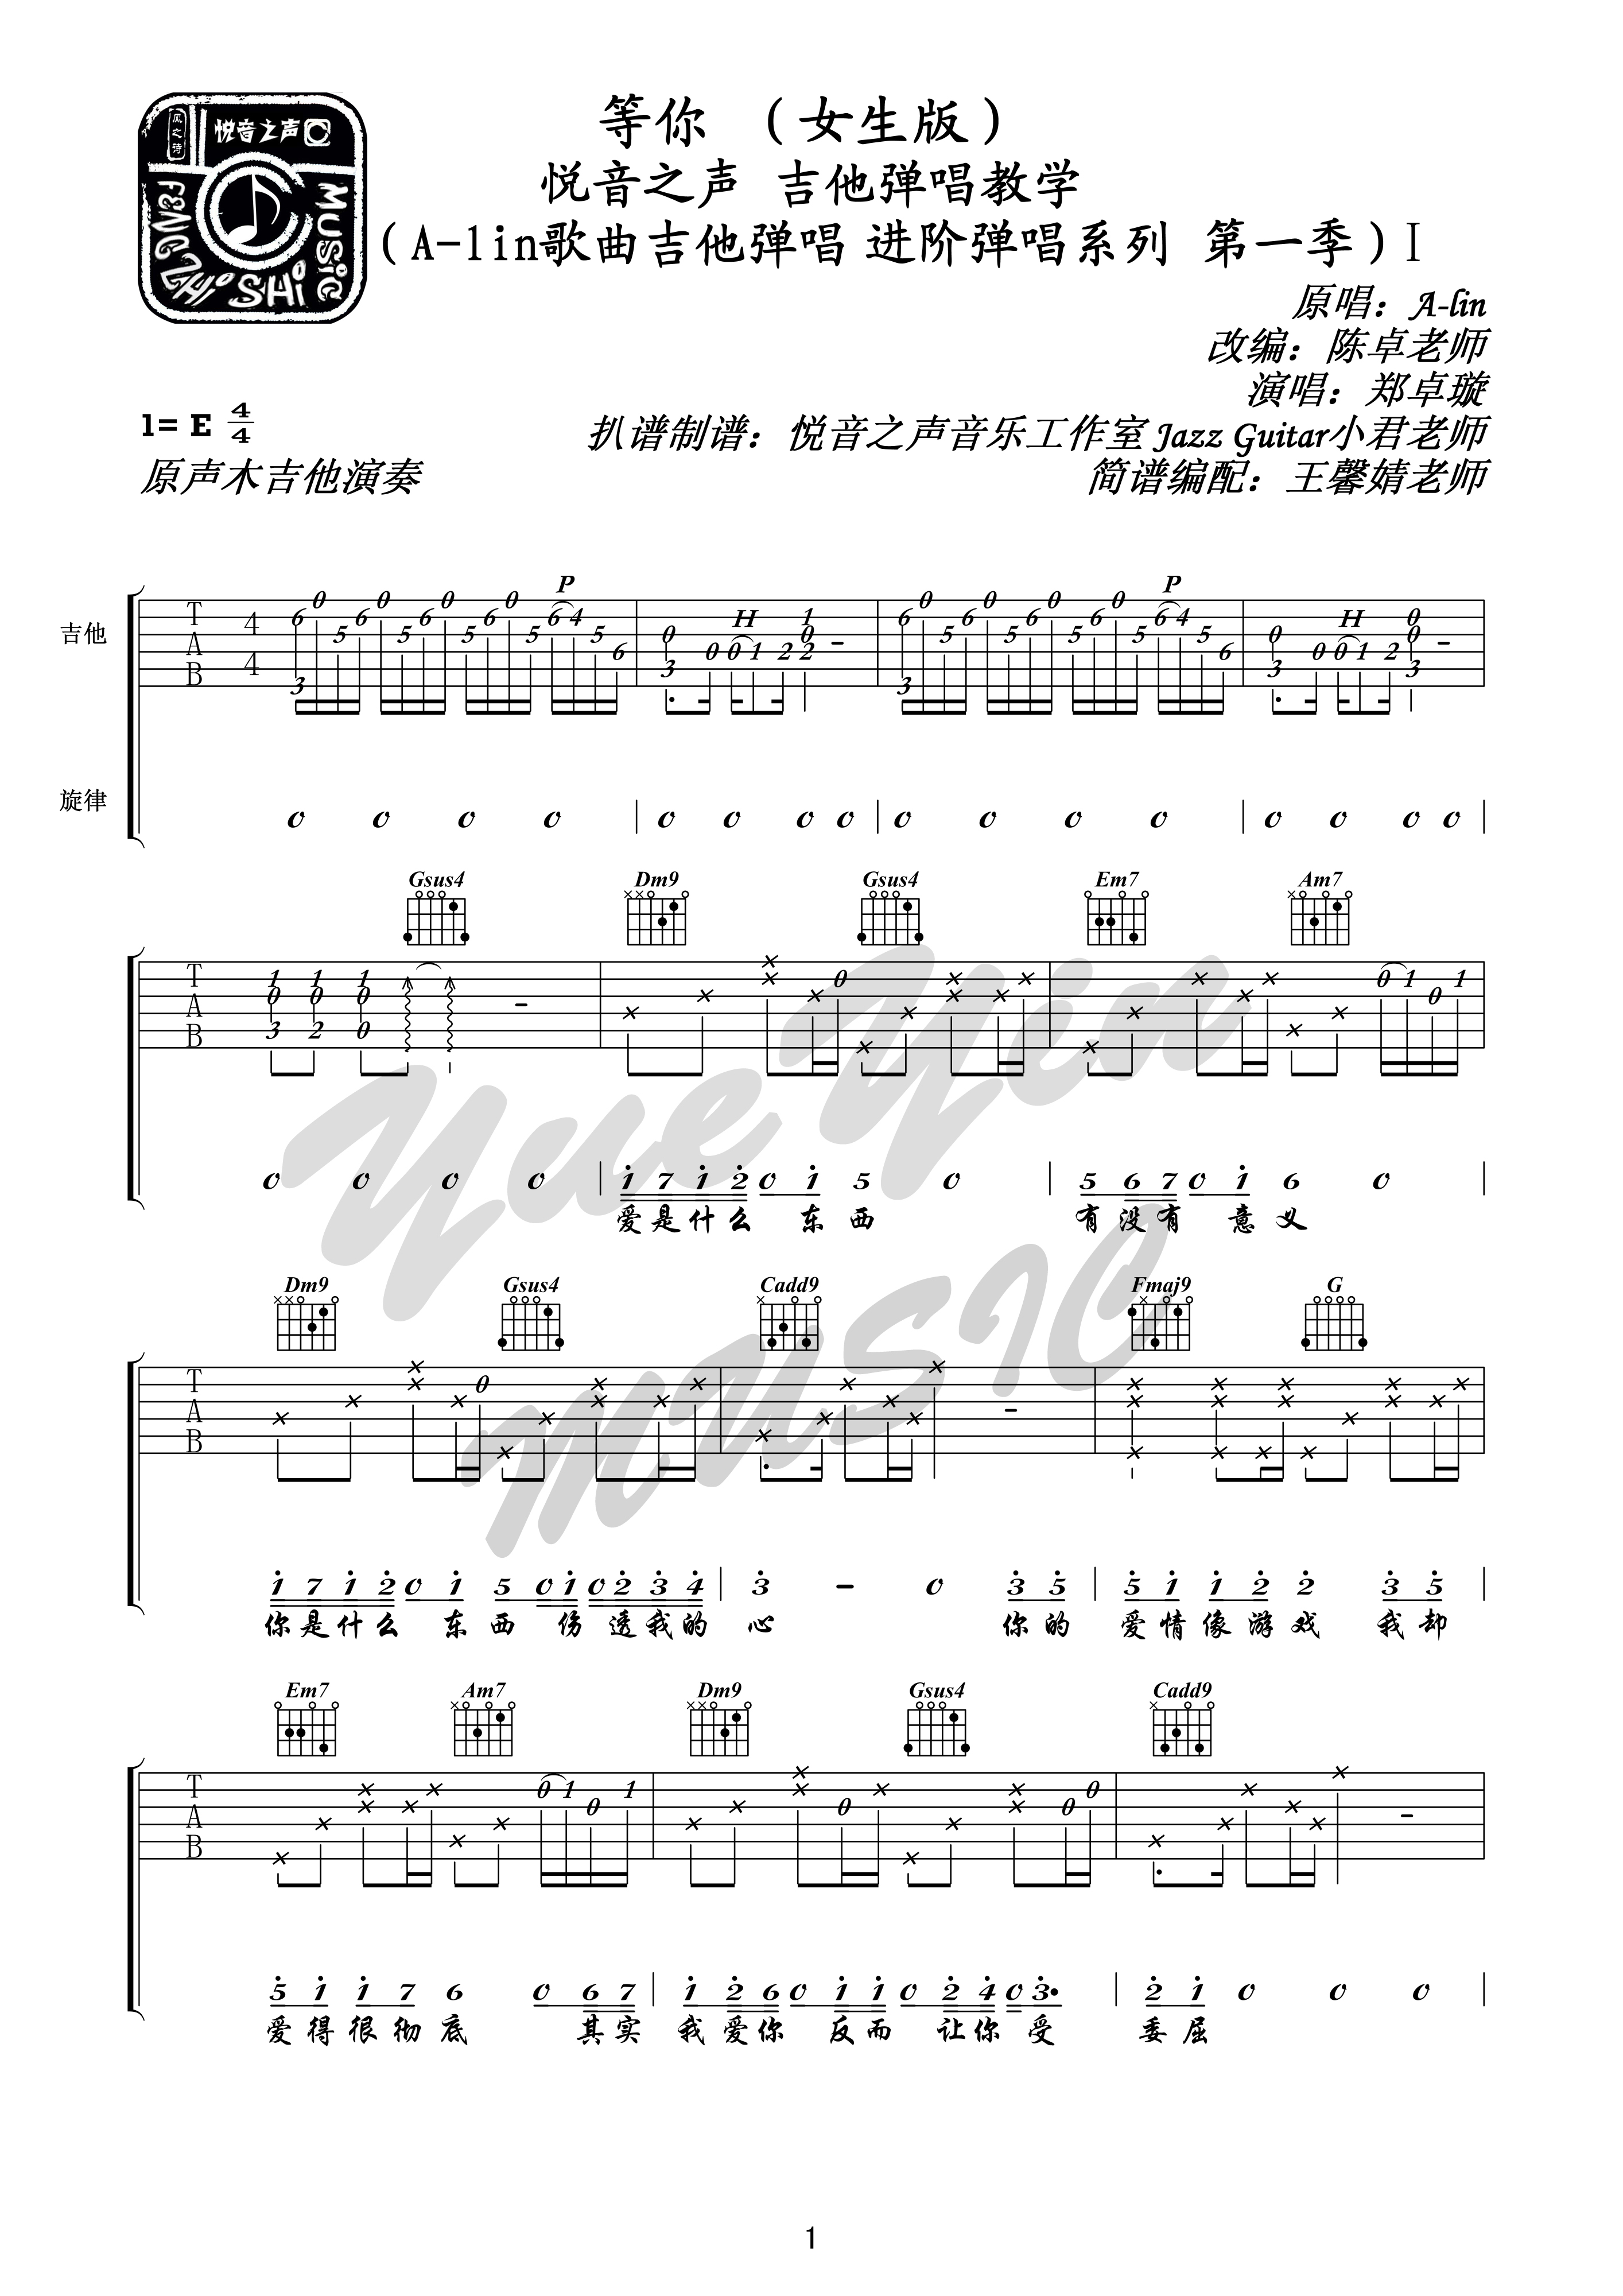 等你 A-Lin 吉他弹唱（悦音之声音乐工作室 进阶弹唱系列 第一季）Ⅰ吉他谱(图片谱,弹唱)_A-Lin(黄丽玲)_等你1.jpg